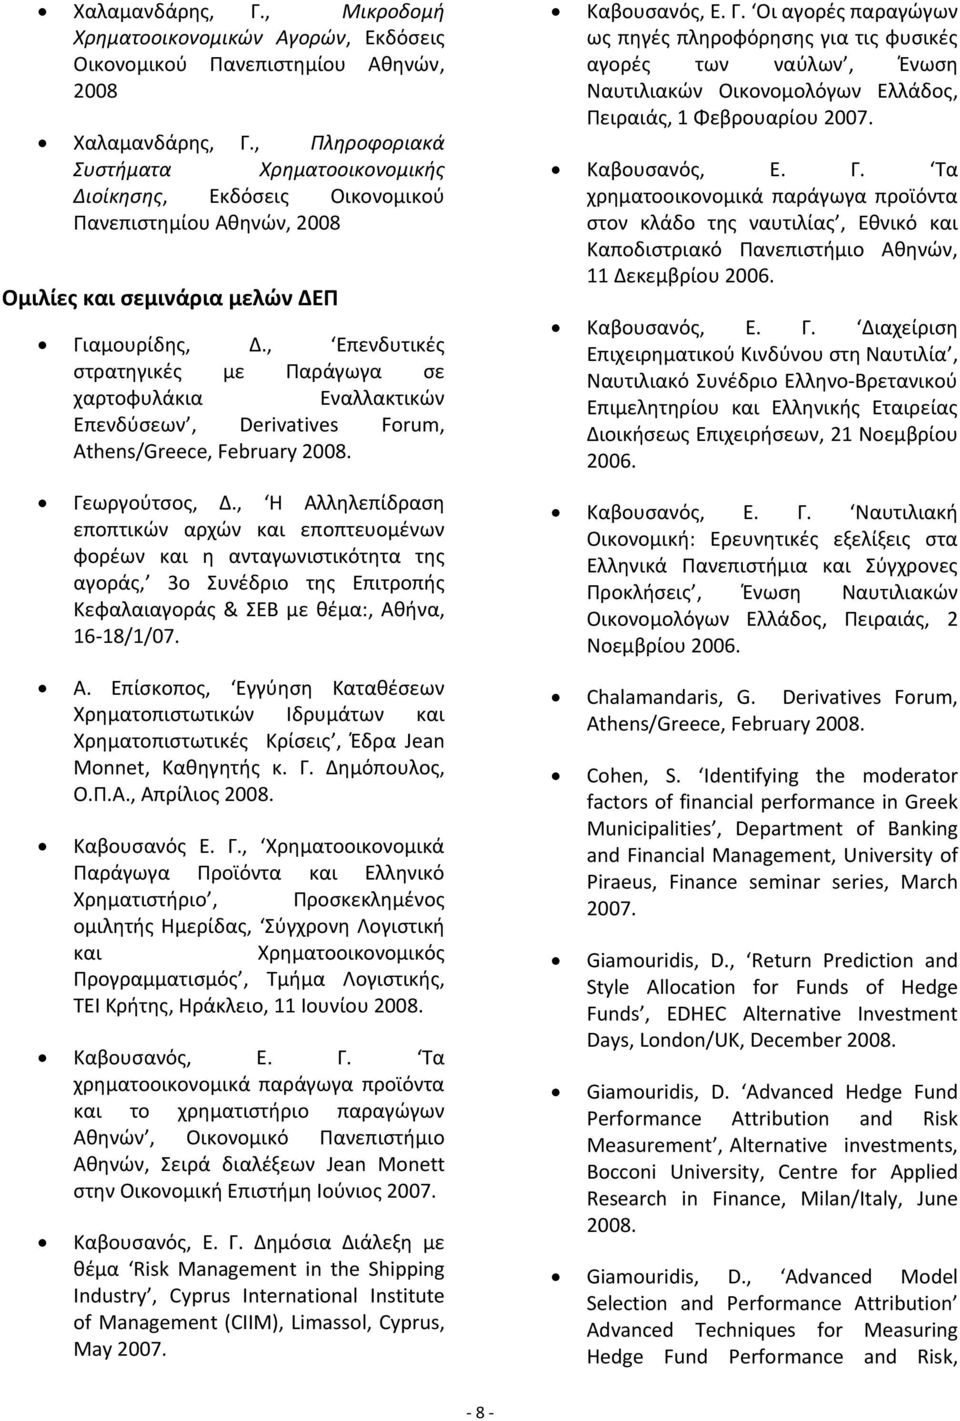 , Επενδυτικές στρατηγικές με Παράγωγα σε χαρτοφυλάκια Εναλλακτικών Επενδύσεων, Derivatives Forum, Athens/Greece, February 2008. Γεωργούτσος, Δ.